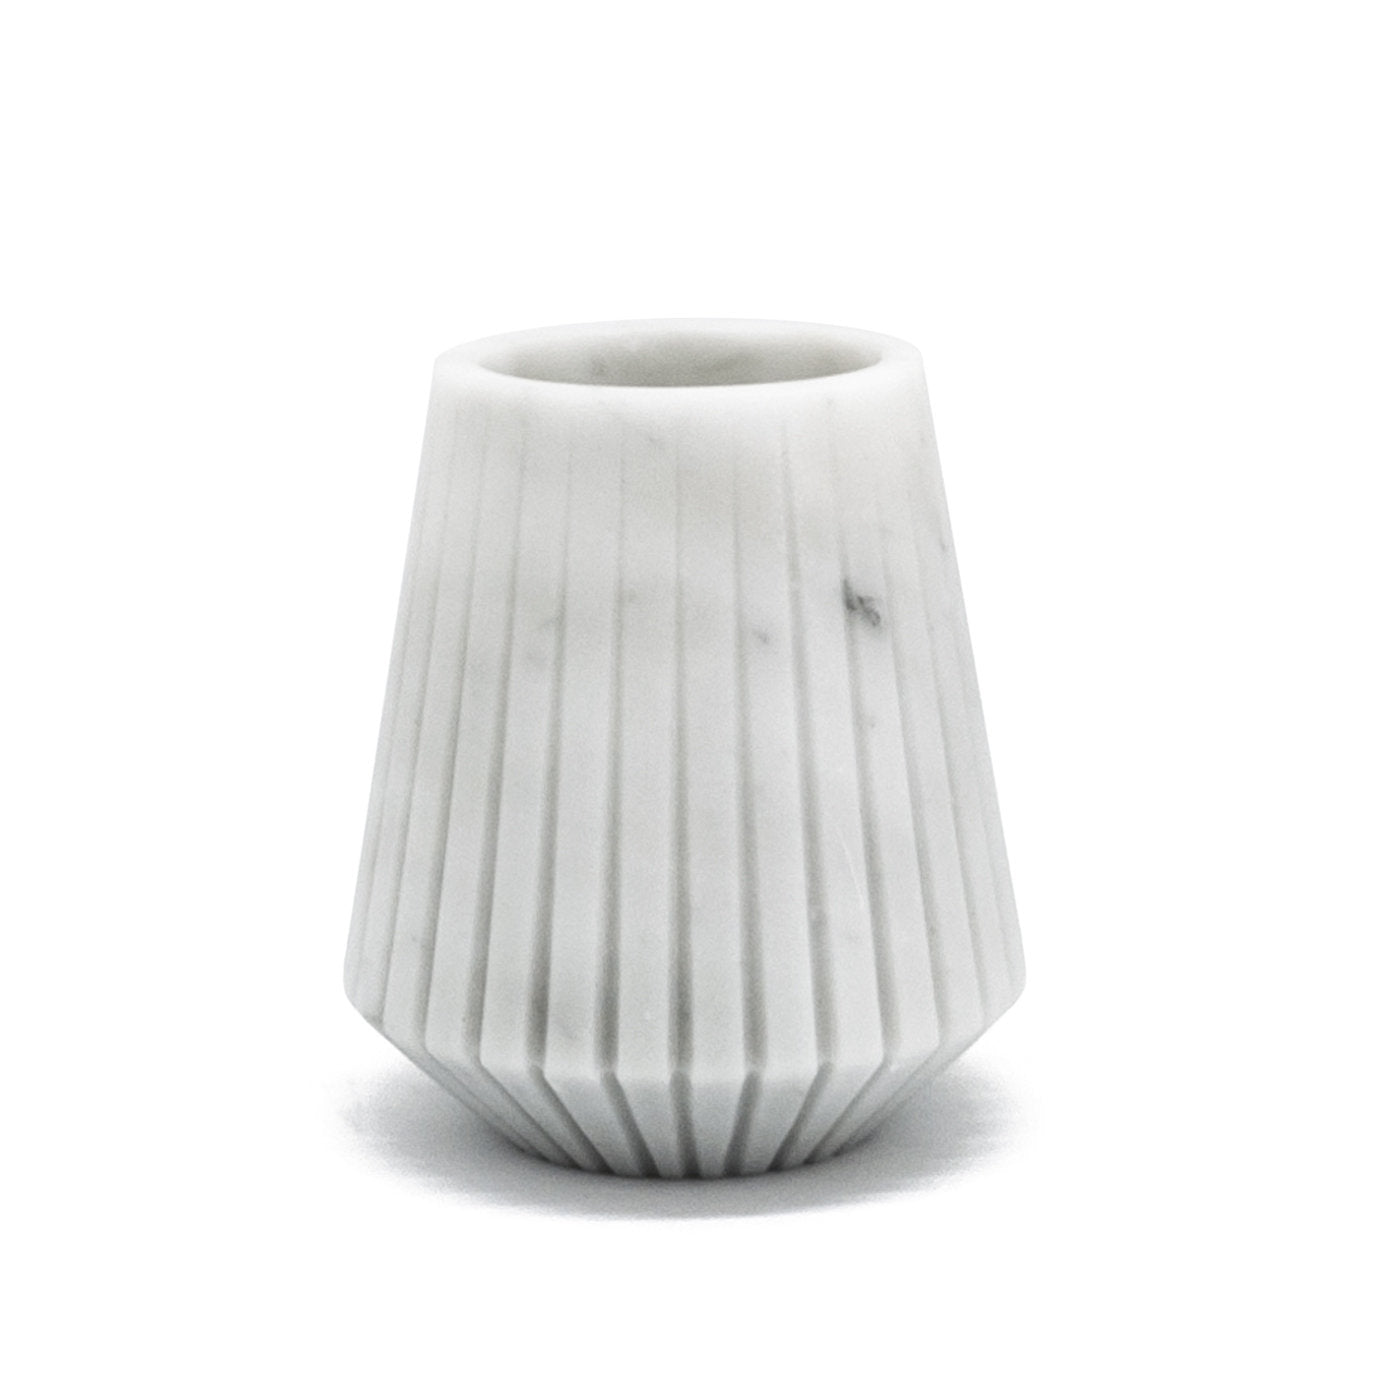 White Carrara Marble Low Vase by Jacopo Simonetti - Alternative view 1